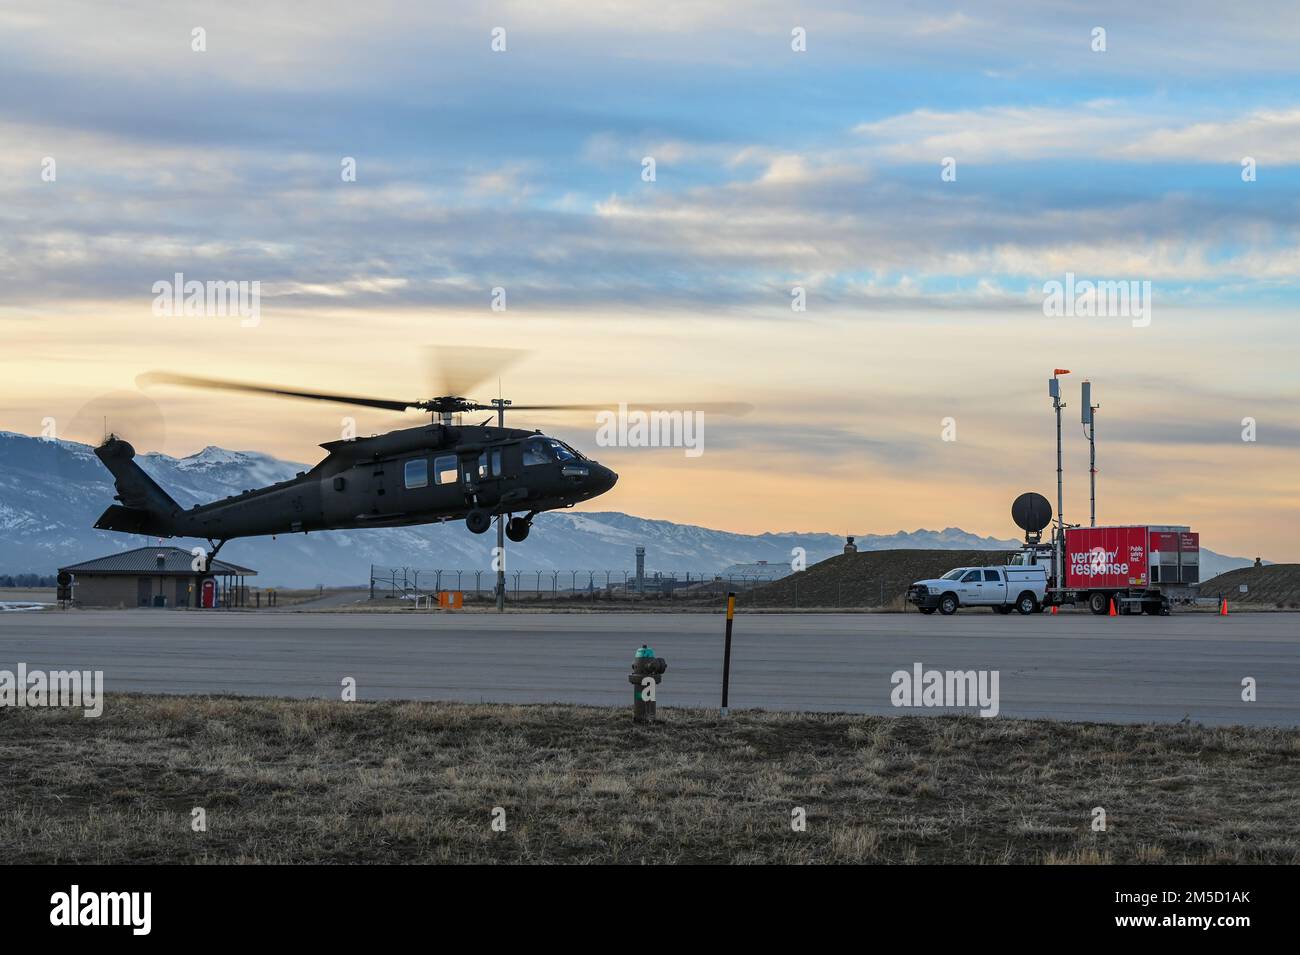 Un UH-60 Blackhawk si trova sopra il campo d'aviazione durante una serie di 5G test avionici il 2 marzo 2022, presso la base dell'aeronautica militare di Hill, Utah. Durante il test è stata utilizzata una stazione di prova mobile 5G come parte della dimostrazione per implementare le tecnologie 5G senza compromettere la sicurezza degli aerei militari e civili. Foto Stock